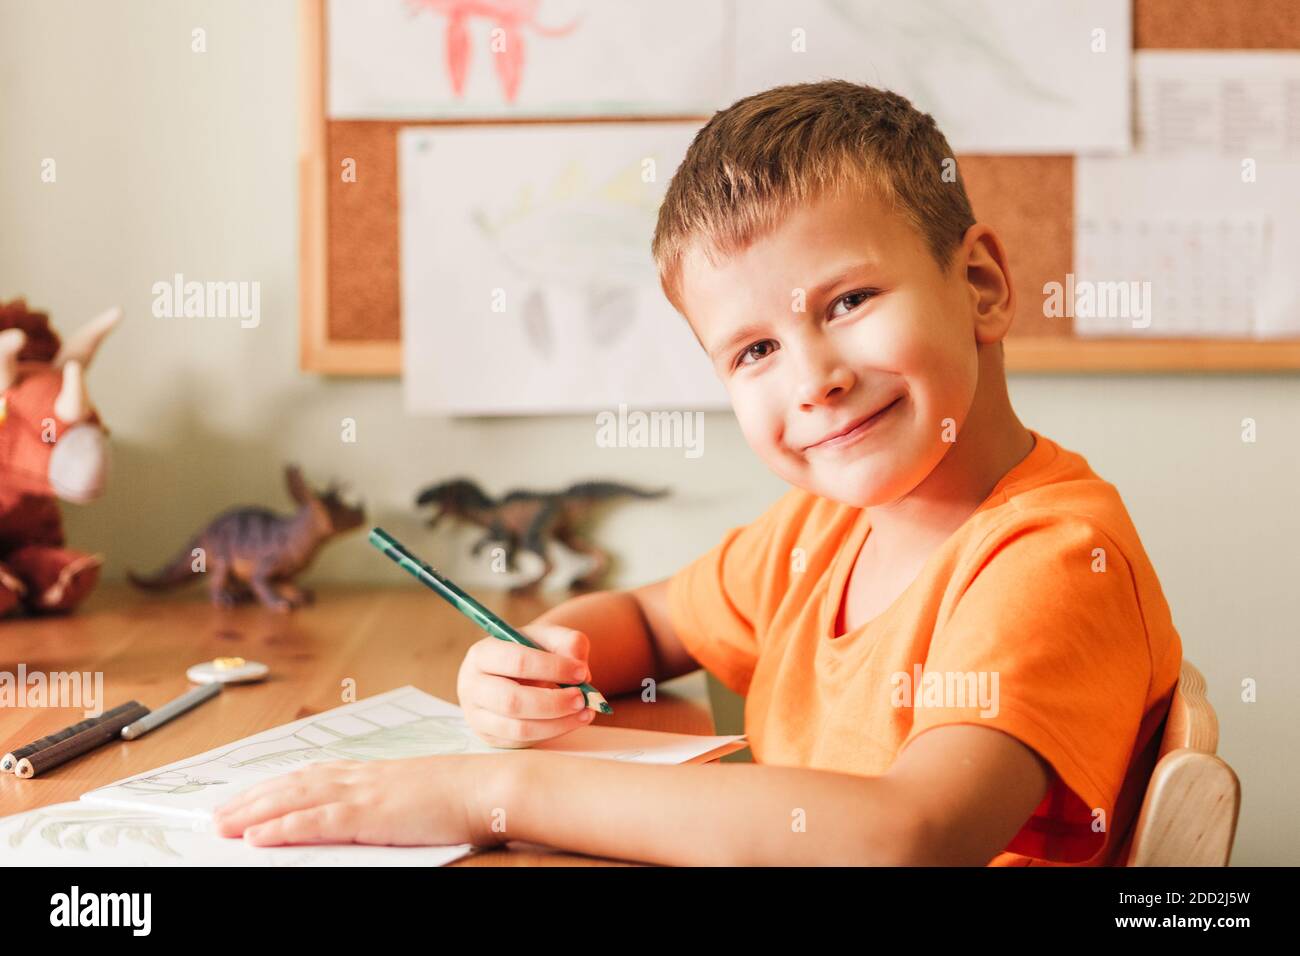 Nettes Kind Junge Zeichnung Dinosaurier auf Bild mit Buntstiften Sitzen am Schreibtisch in seinem Zimmer Stockfoto